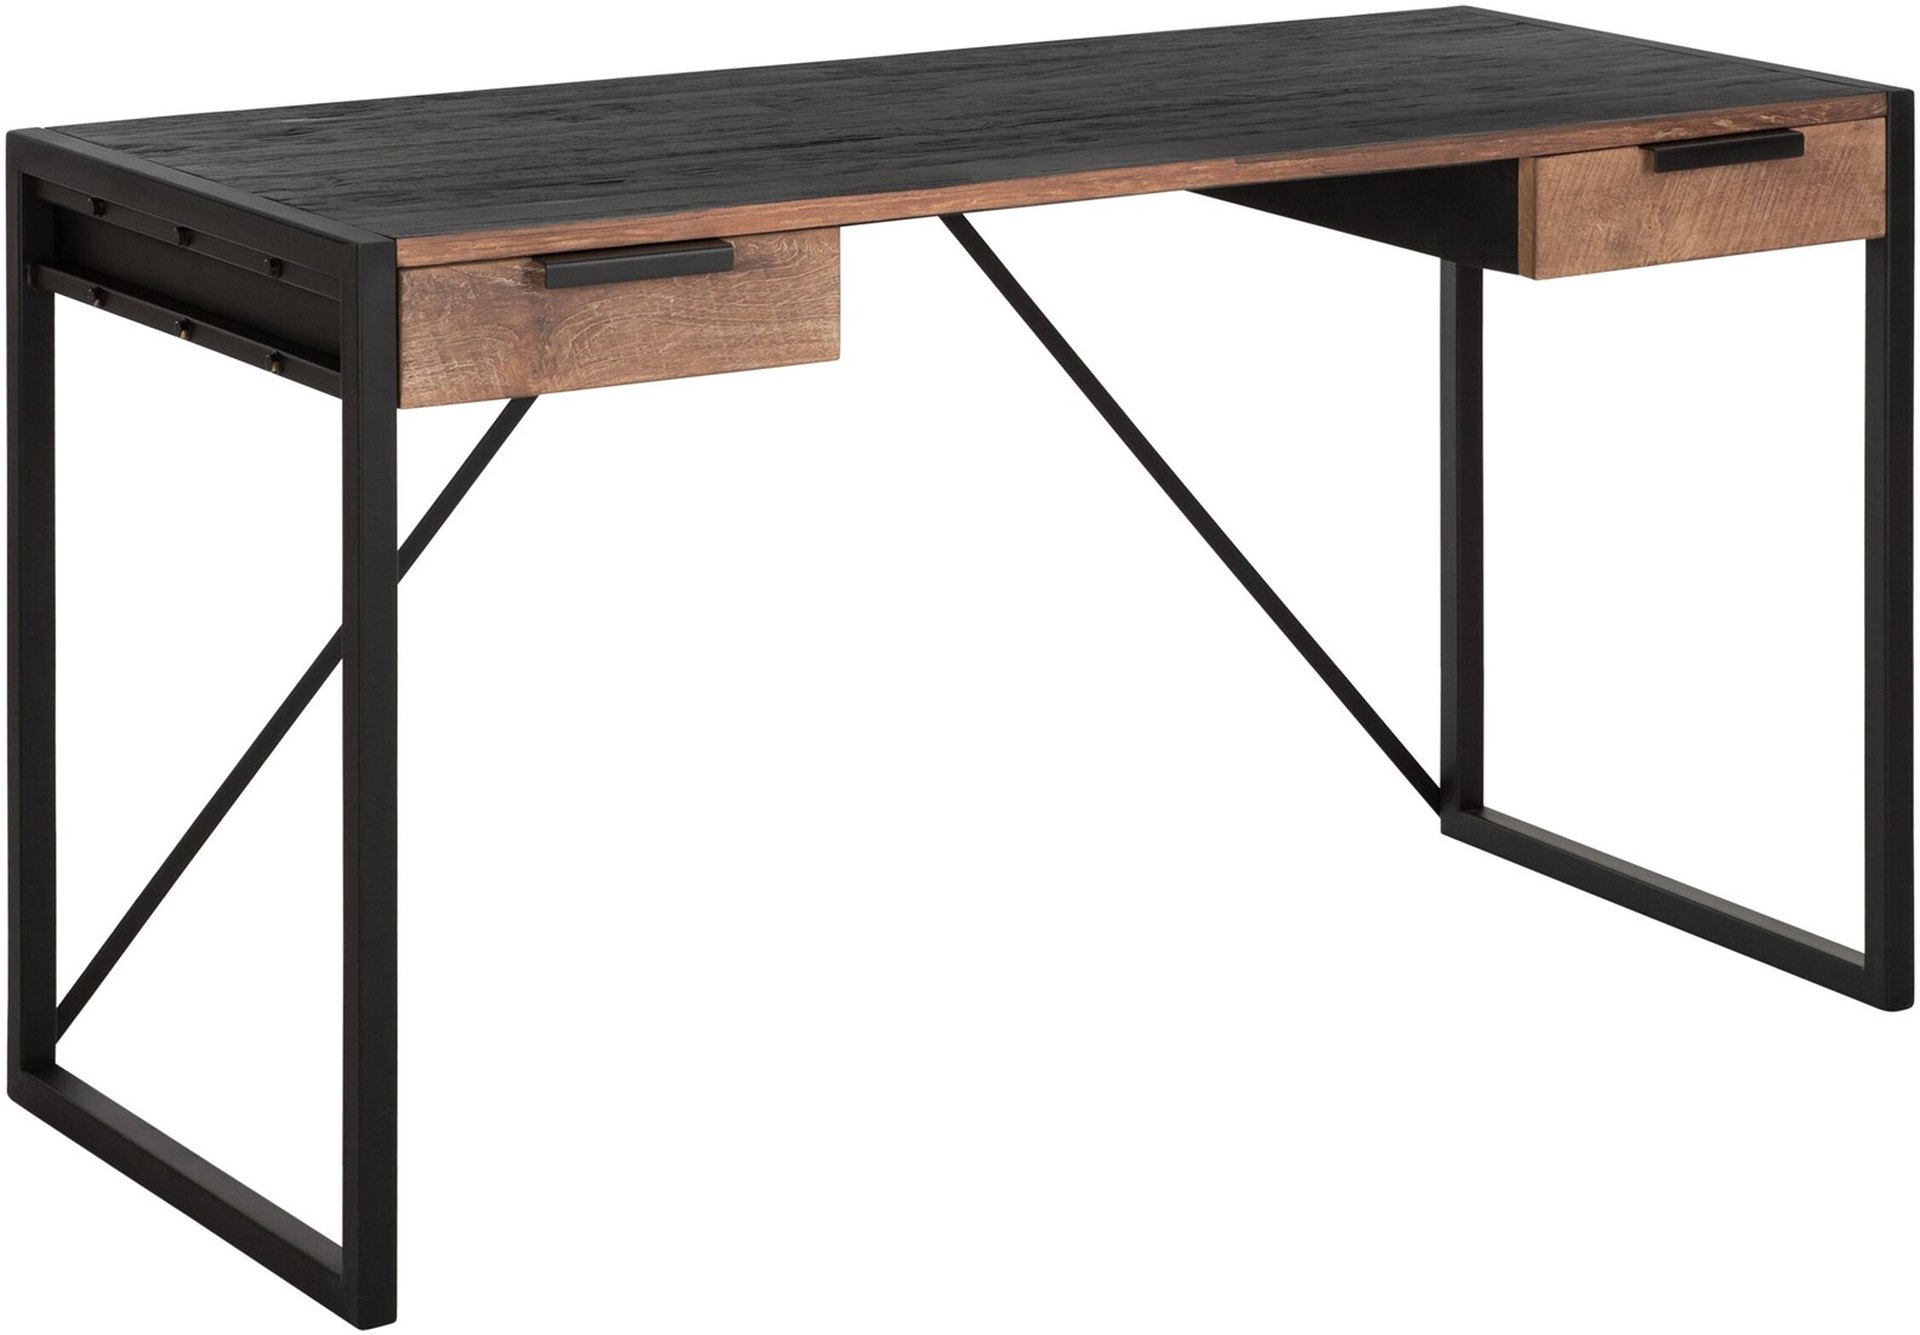 Der Schreibtisch Cosmo wurde aus recyceltem Teakholz gefertigt, welches einen natürlichen Farbton besitzt. Das Gestell ist aus Metall und ist Schwarz. Der Schreibtisch verfügt über zwei Schubladen.